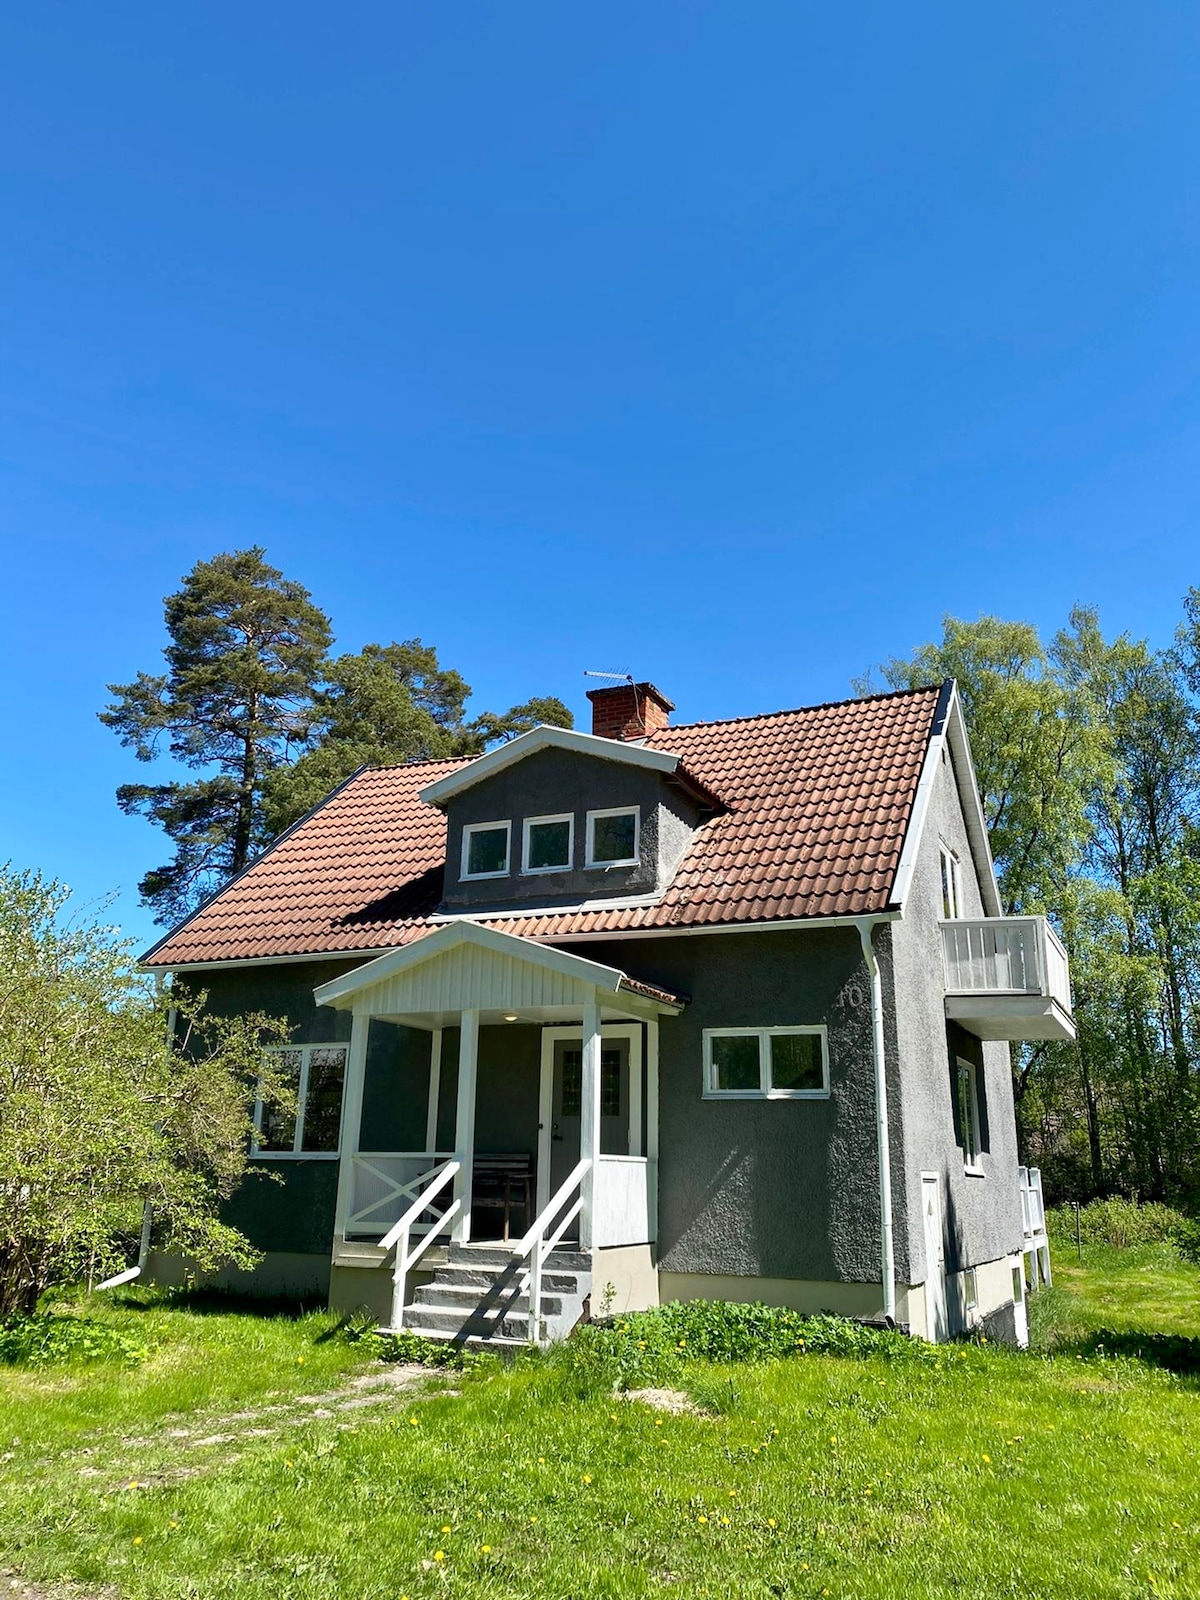 Värmland的欢乐普通民宅